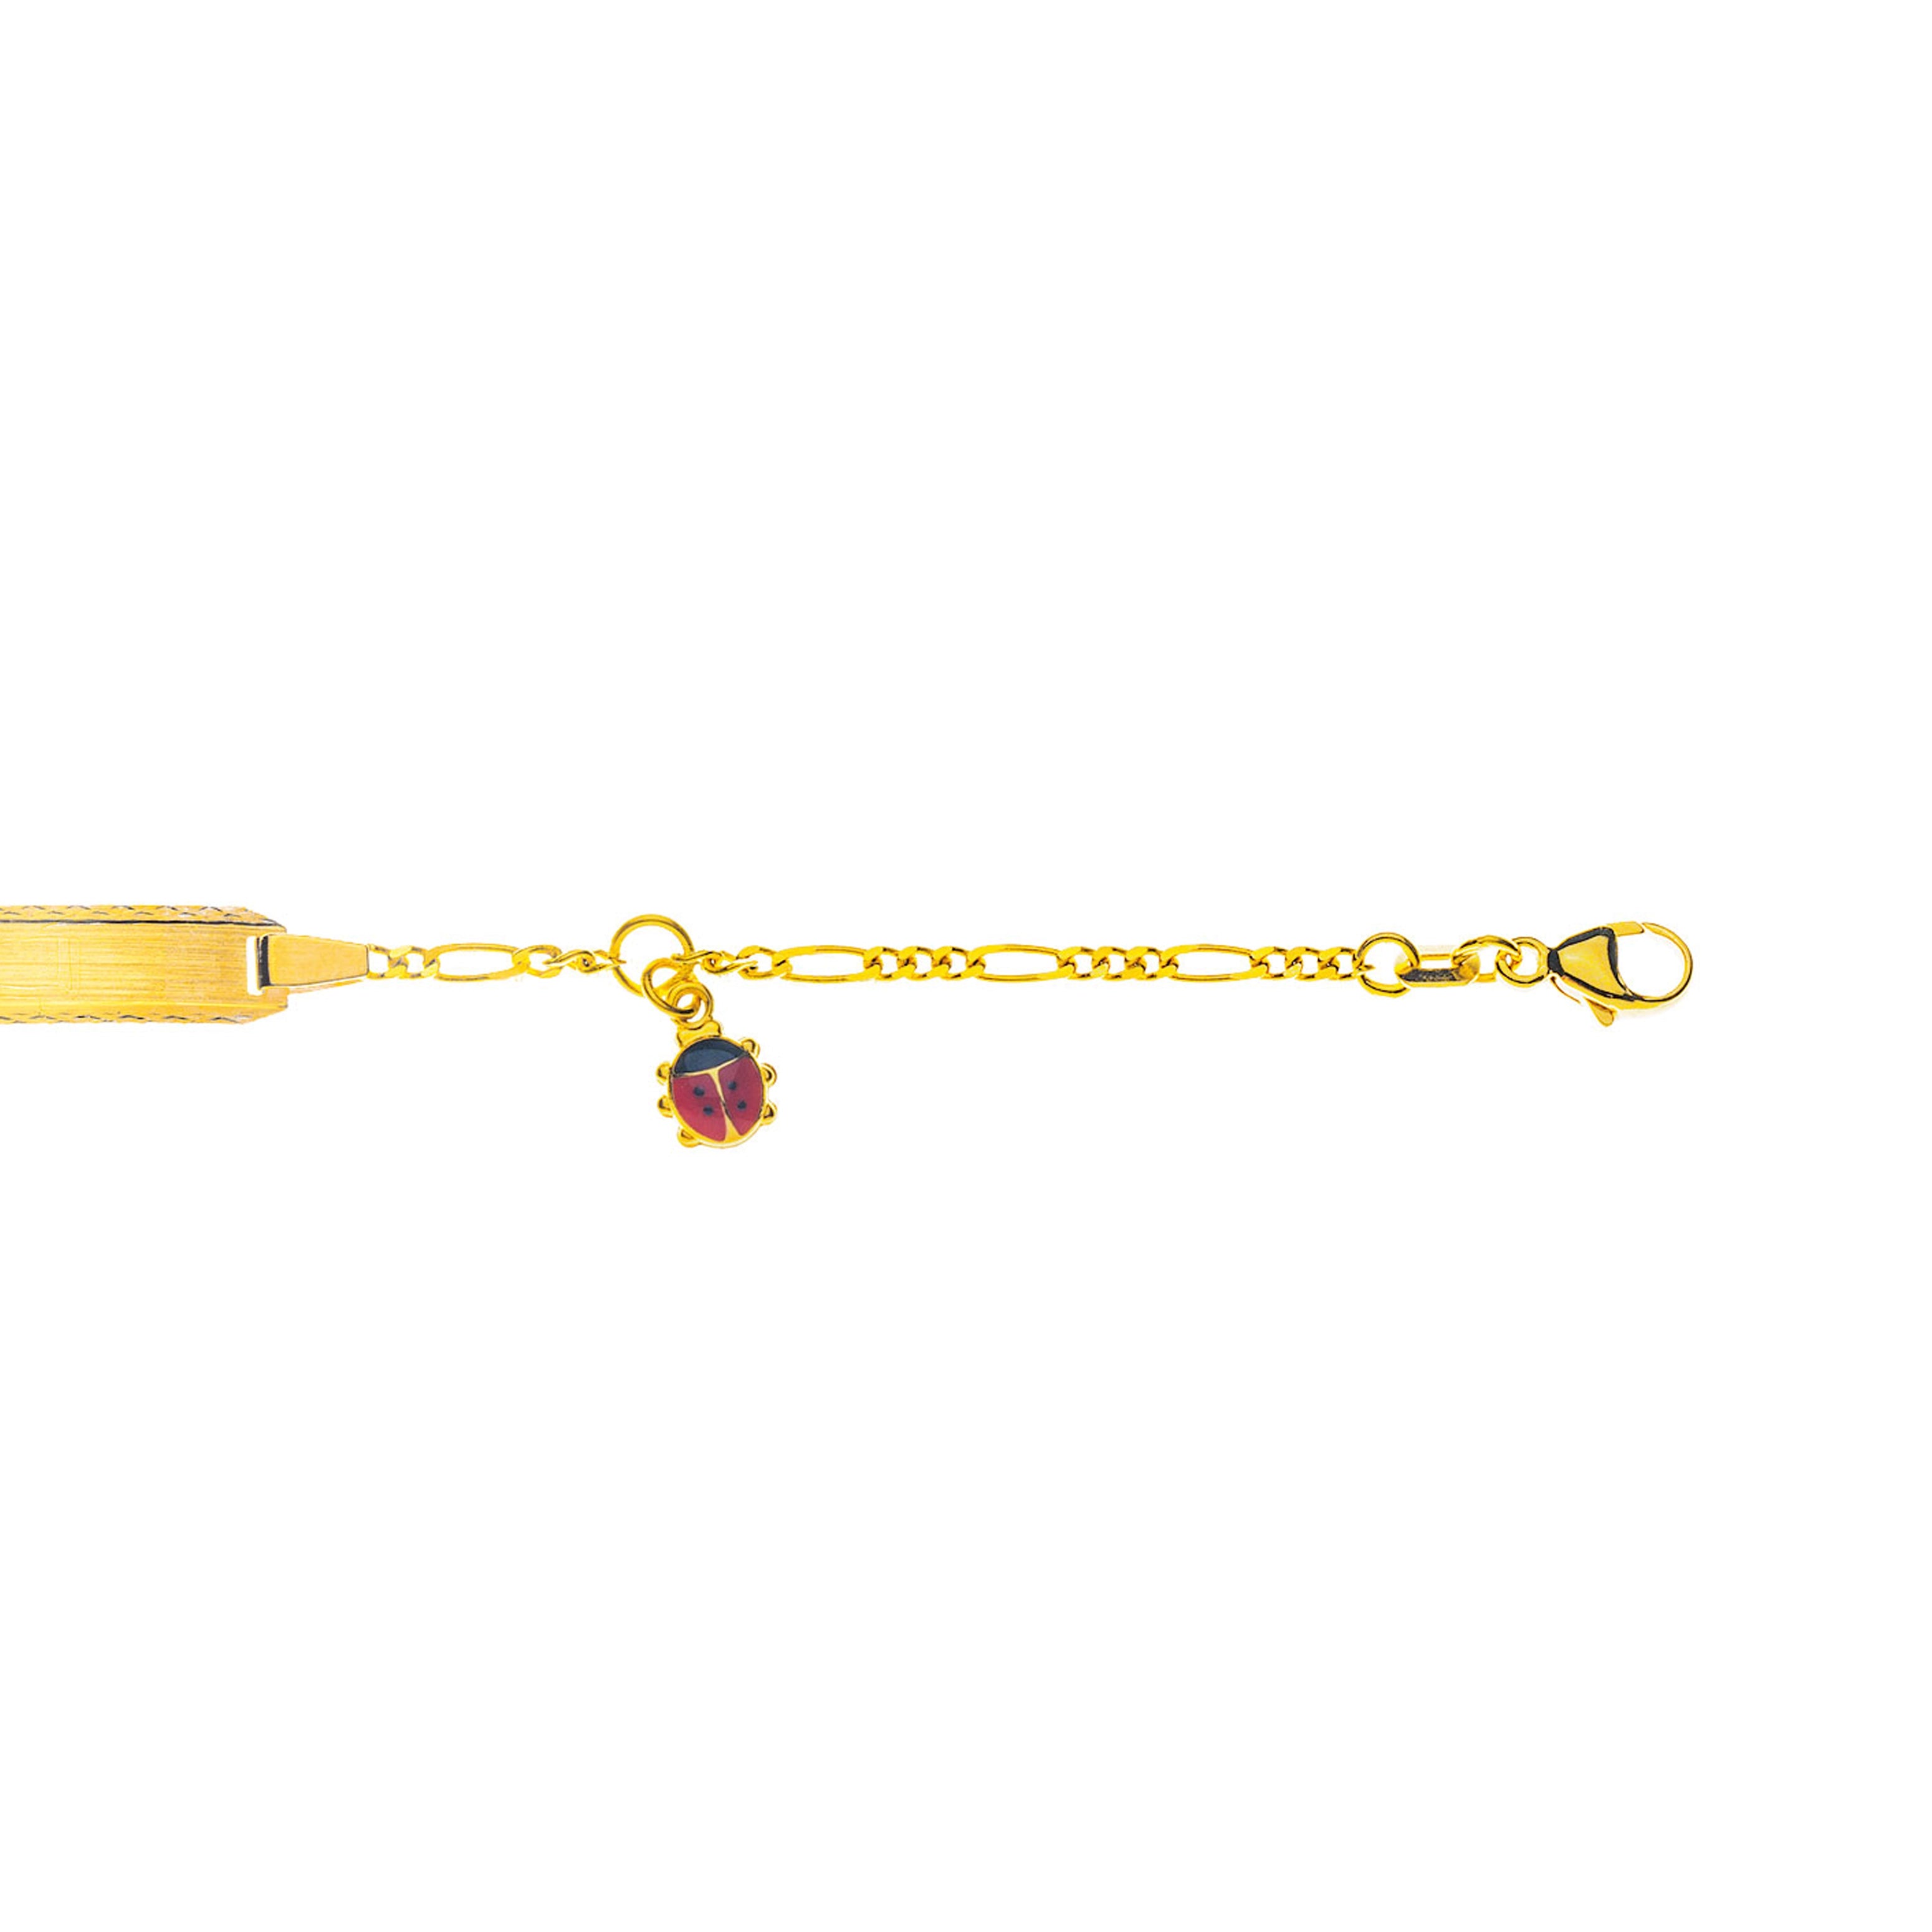 Bébé Bracelet Figaro Diamantiert Gelbgold 750 mit Gravurplatte mit Emaille-Käfer-Anhänger